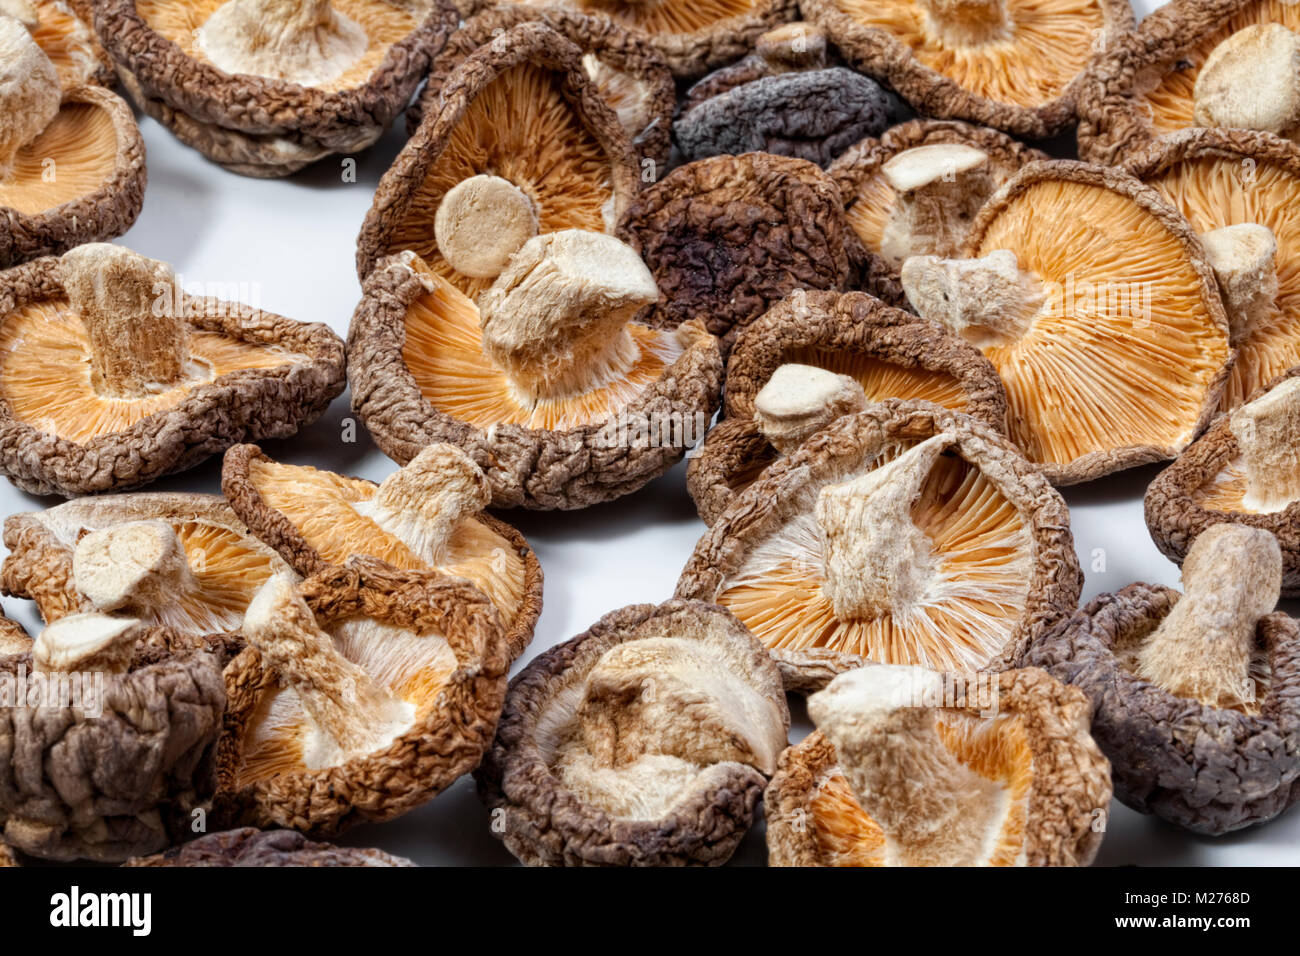 Shiitake mushrooms (Lentinula edodes) Stock Photo